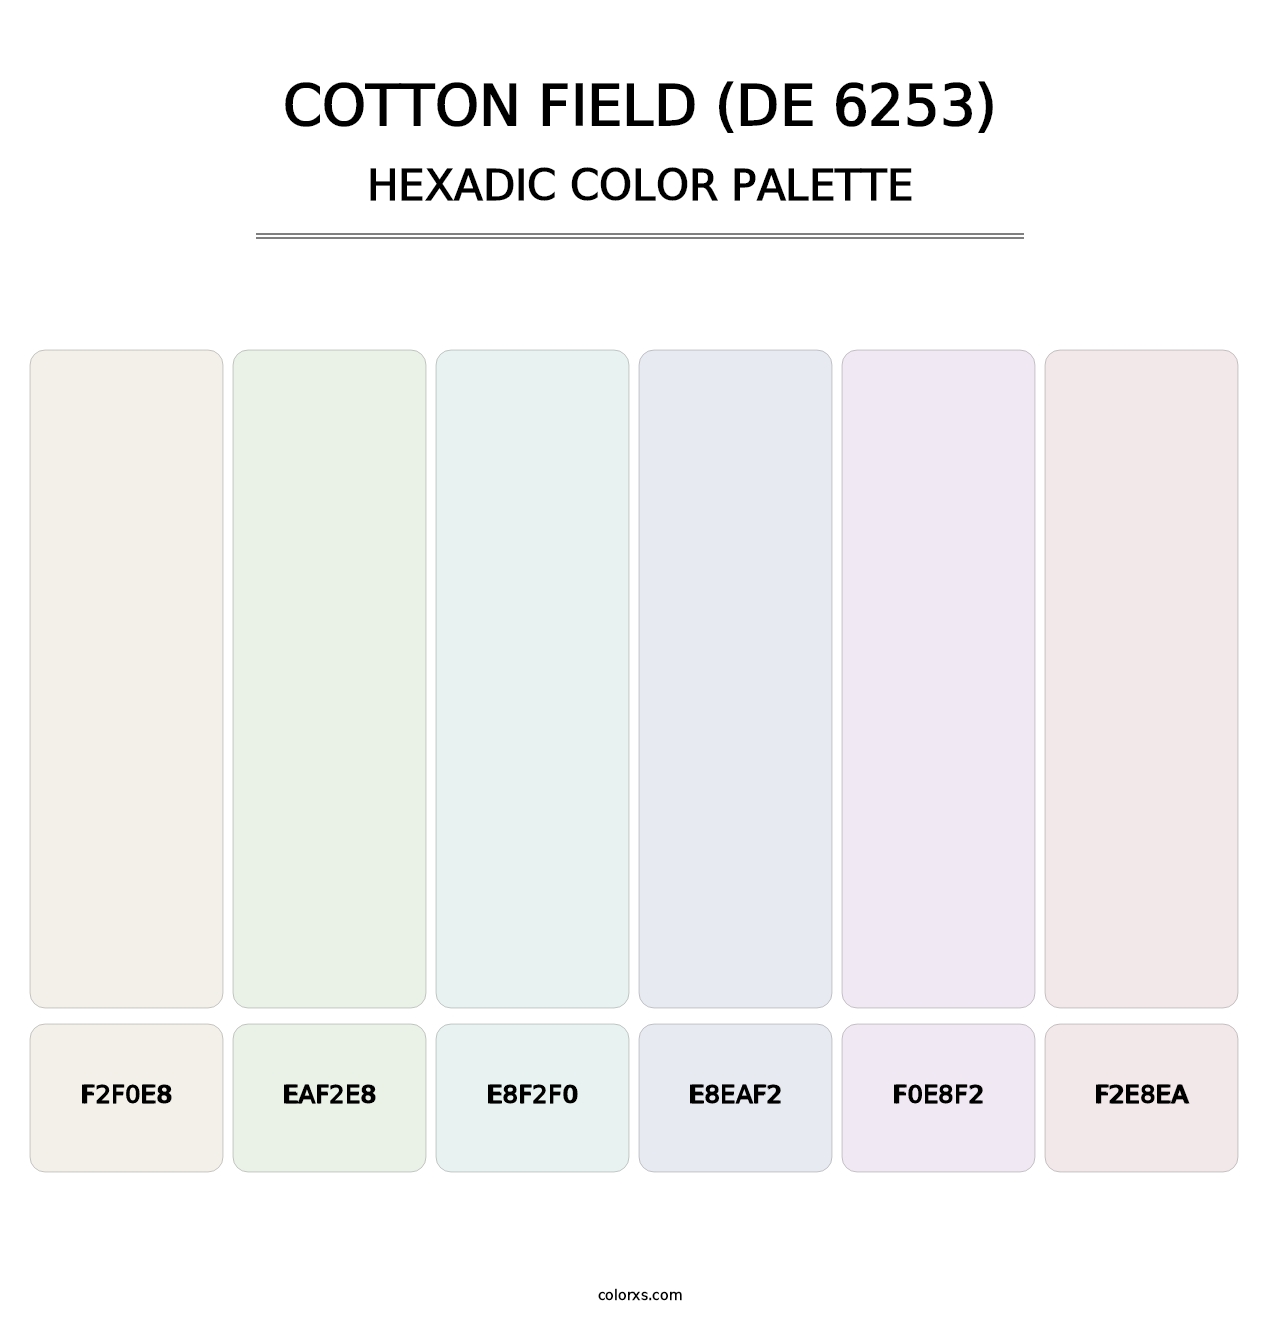 Cotton Field (DE 6253) - Hexadic Color Palette